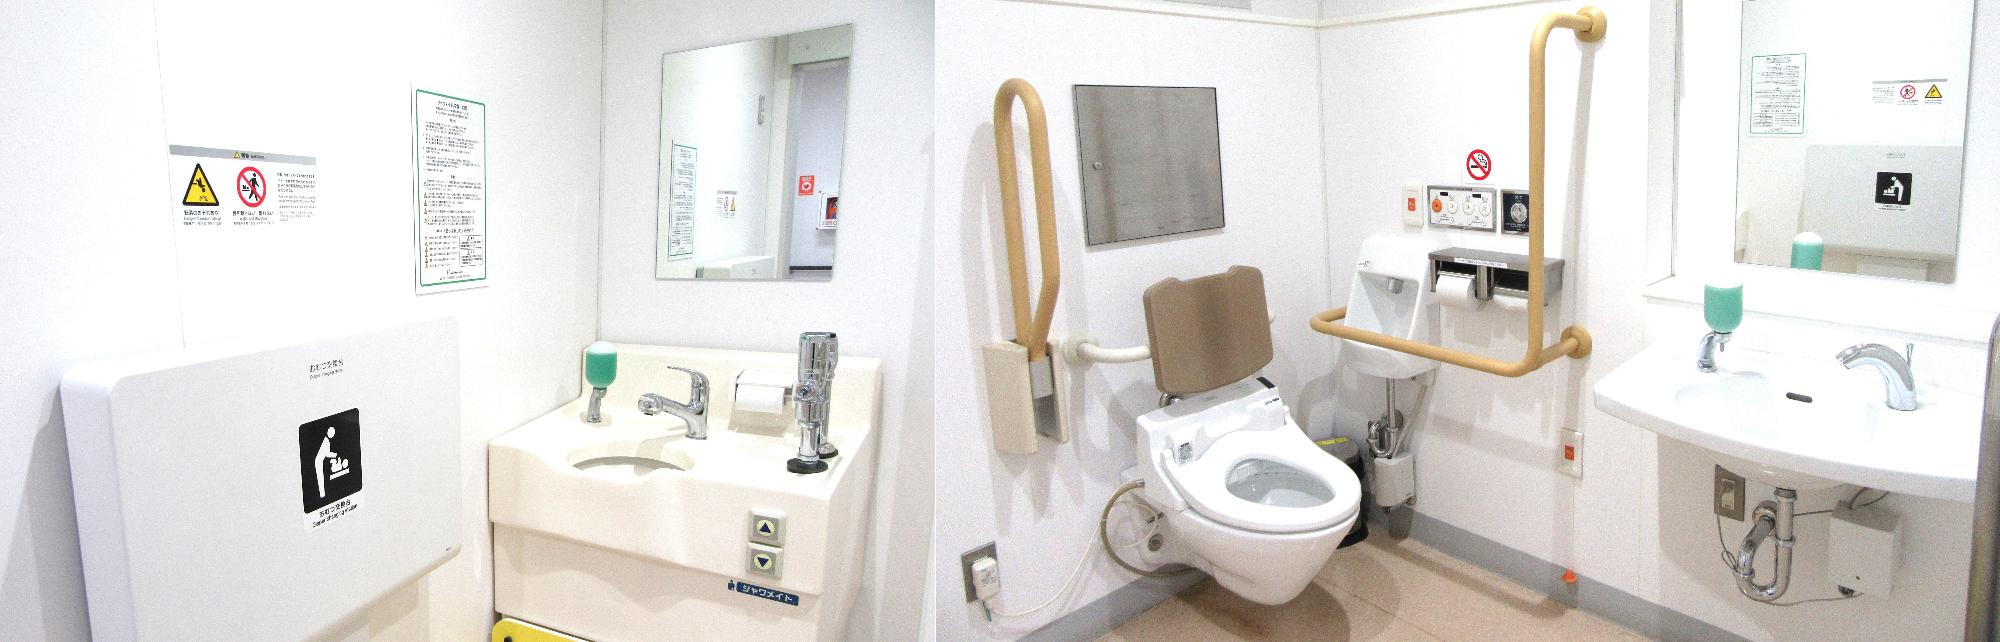 志津市民プラザ 多目的トイレ